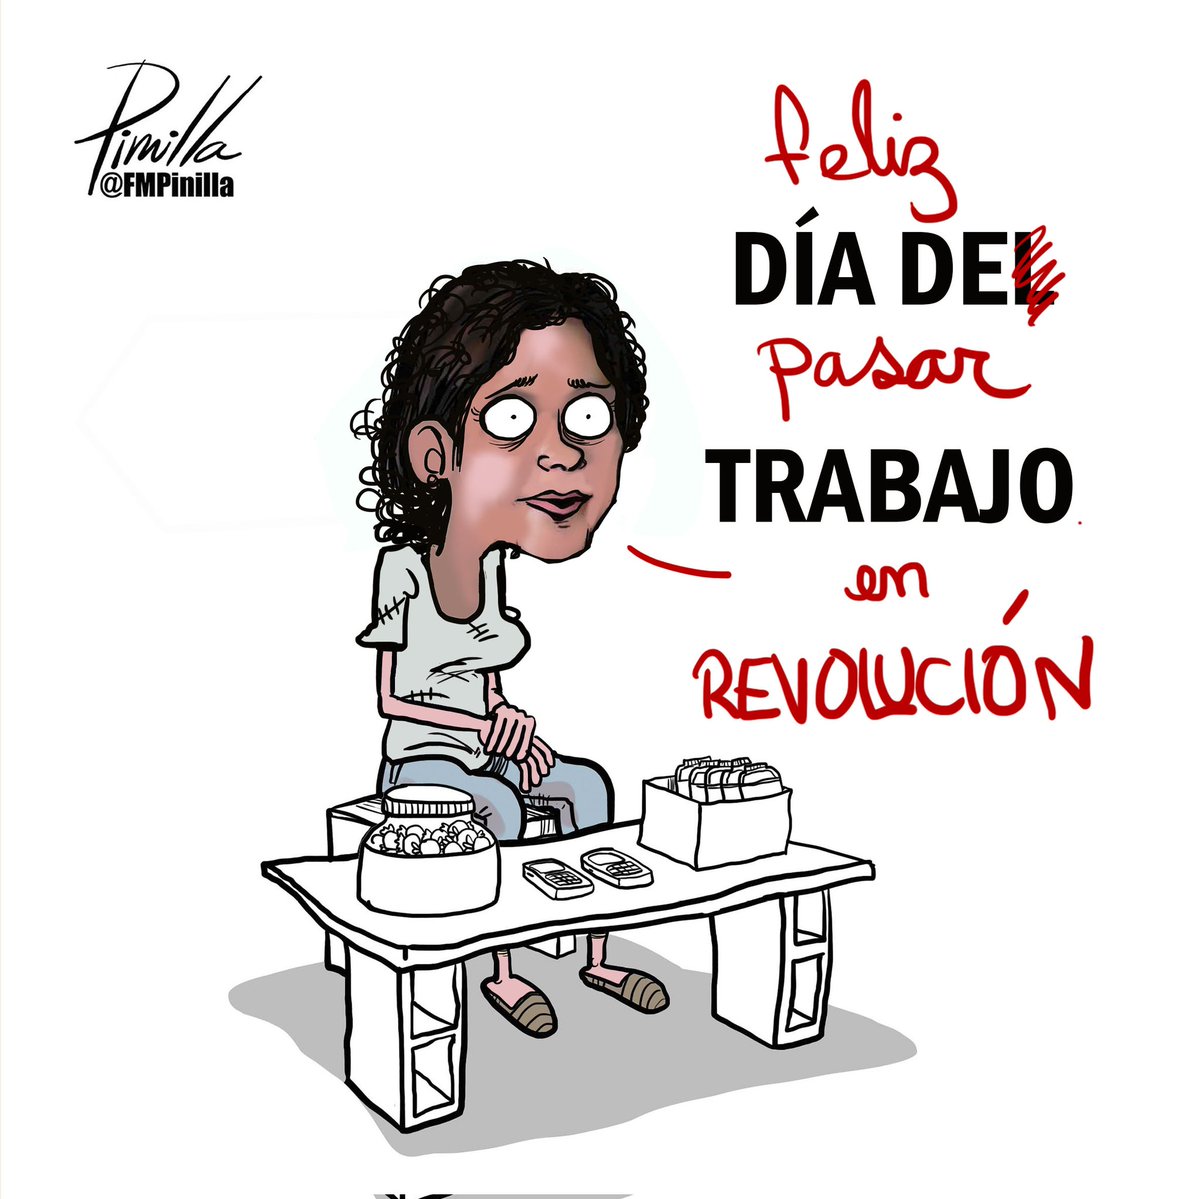 ¡Feliz día de pasar trabajo en REVOLUCIÓN!
•
#caricatura para @elnacionalweb.
•
#caricatura #cartoon #Venezuela #venezolanos #politicalcartoon #DiaDelTrabajador #DiaDelTrabajo
#DiaDelTrabajo2023